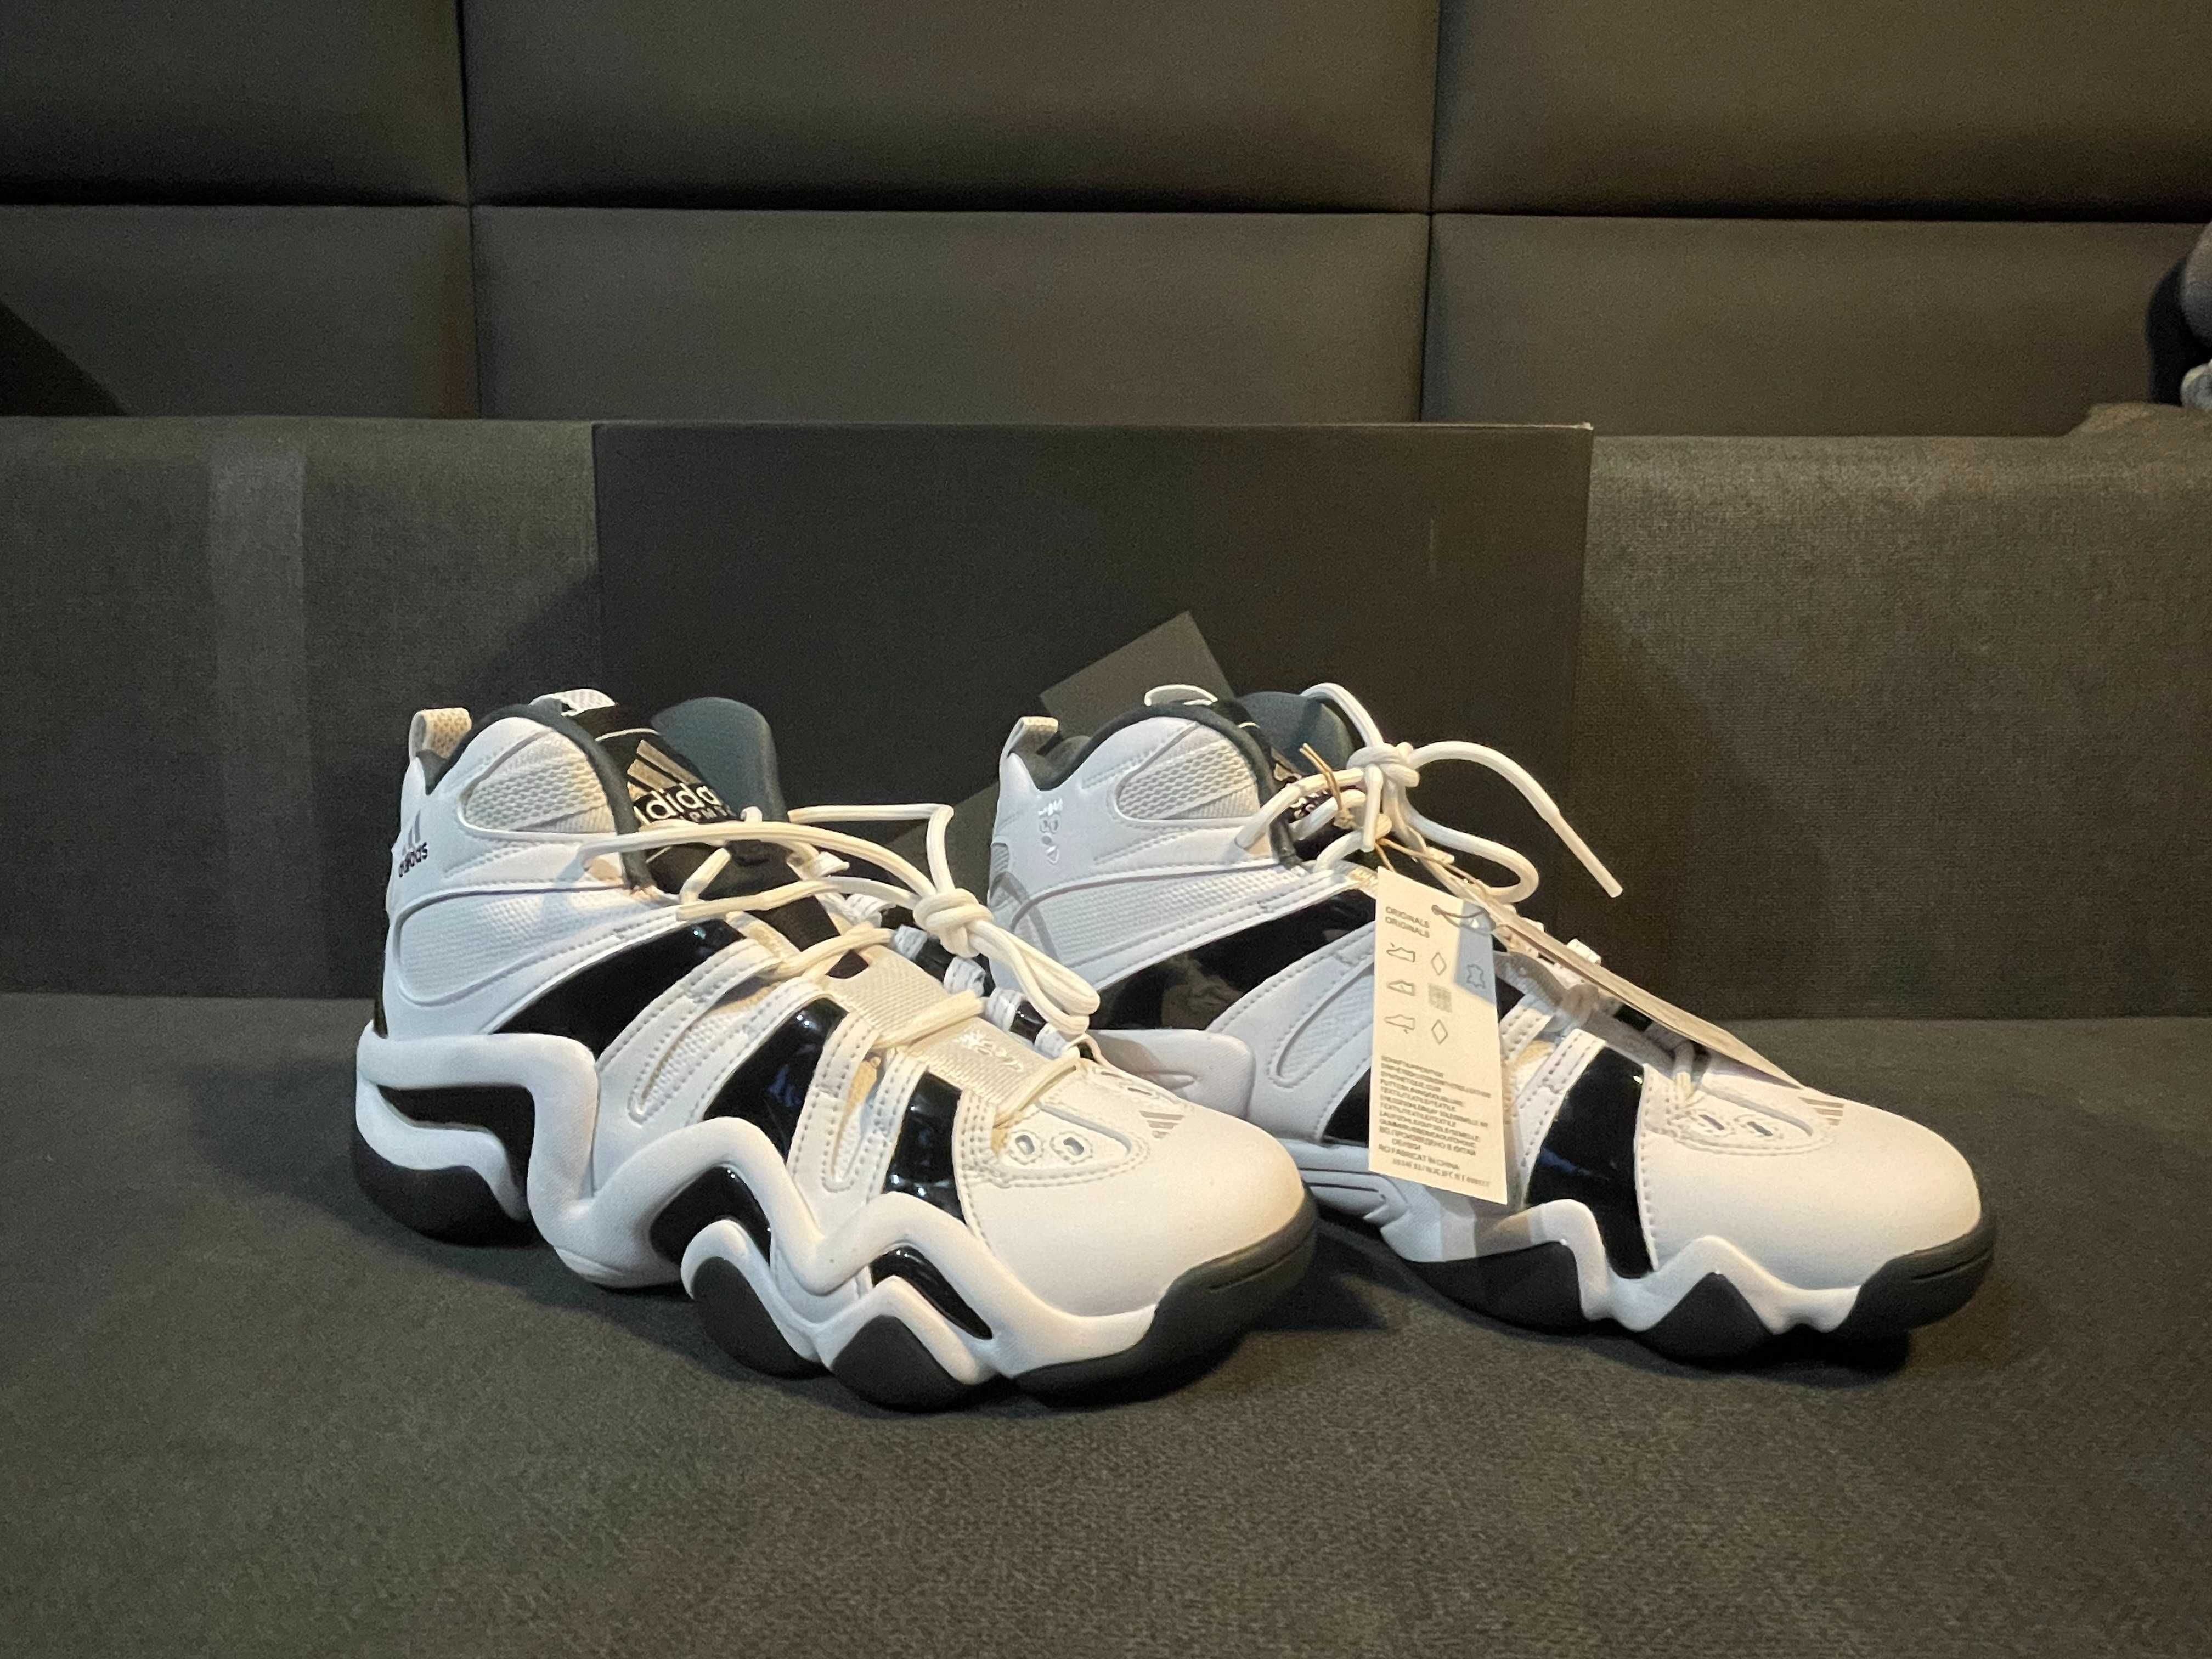 NOWE, oryginalne, białe Adidas Crazy 8, rozmiar 44/10/28 cm